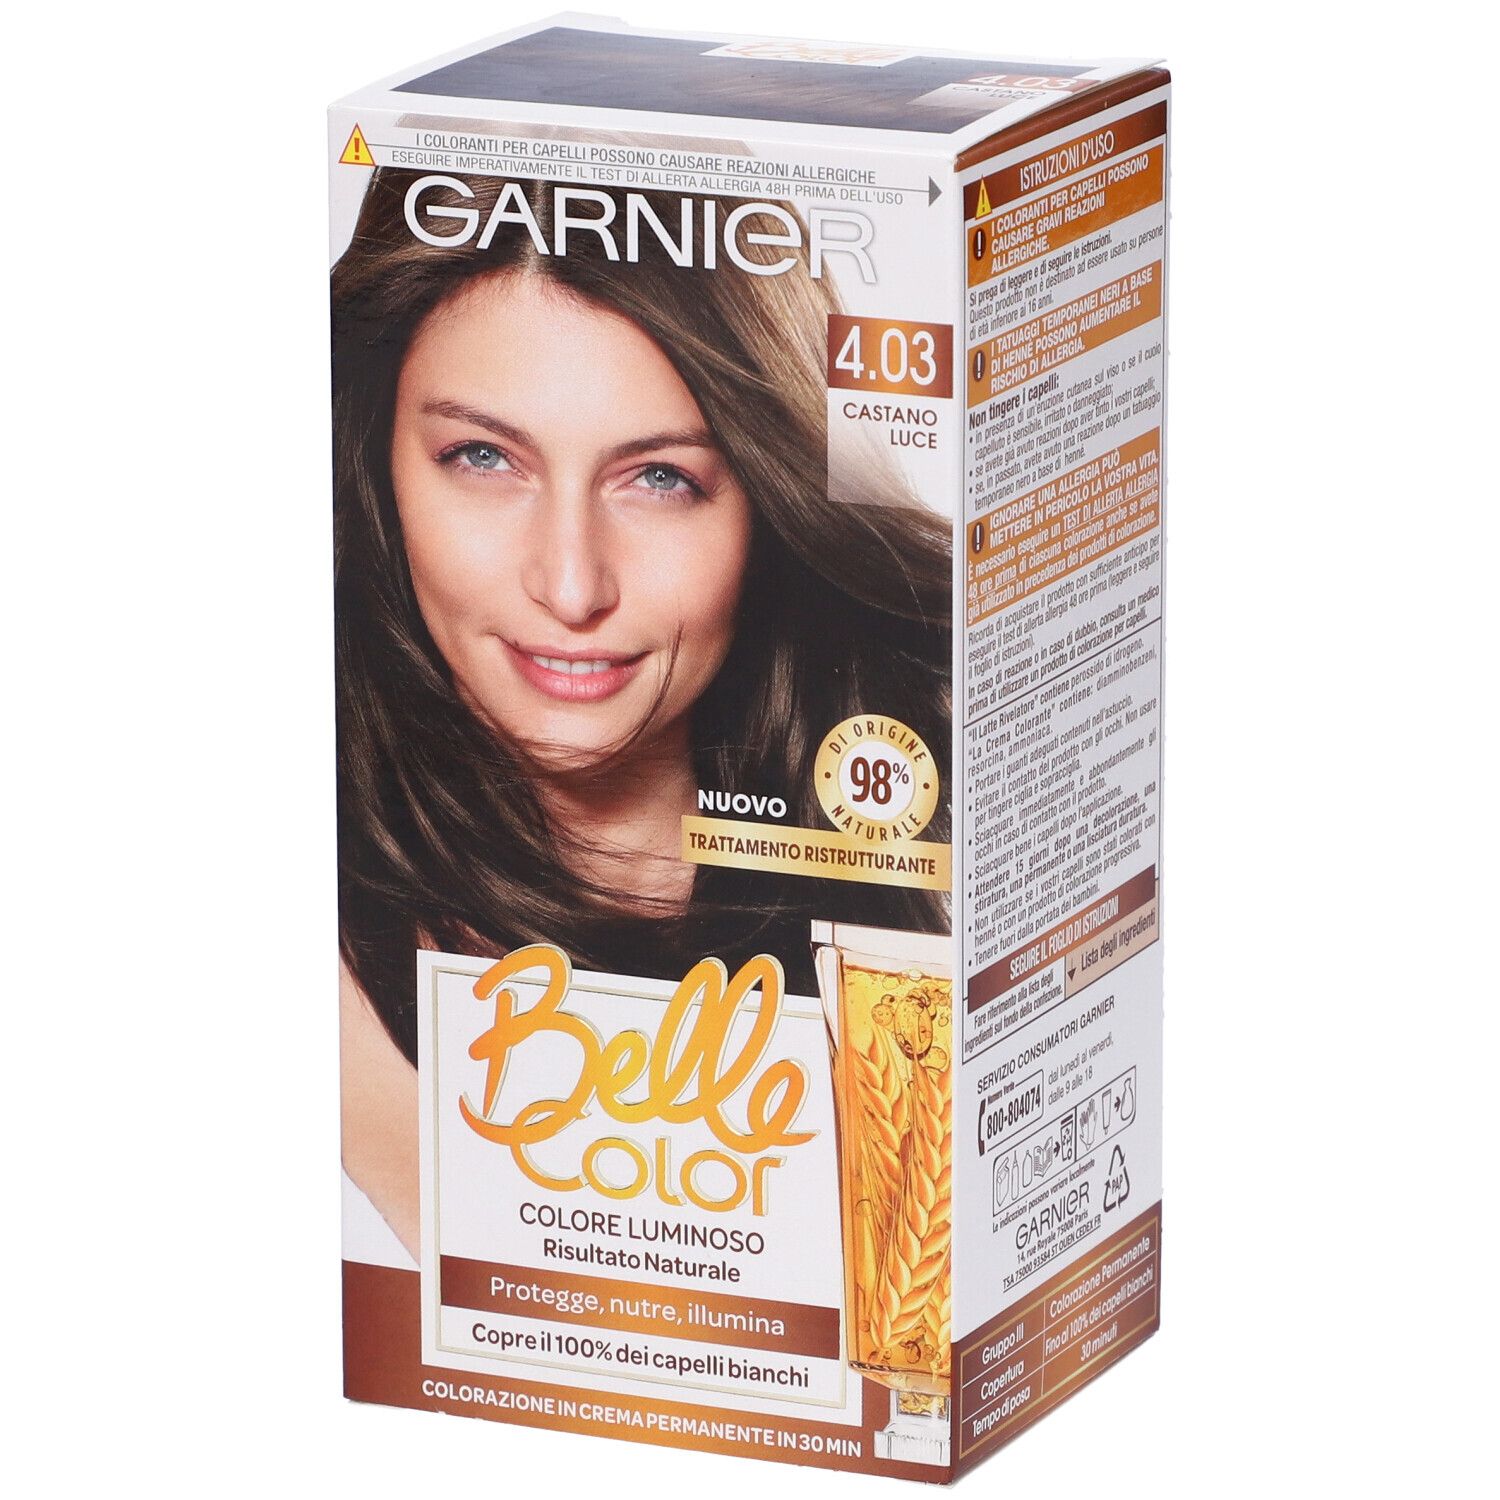 Image of Garnier Tinta Capelli Belle Color, Colore Luminoso e Riflessi Naturali, Copre il 100% dei capelli bianchi, Castano Mediterraneo